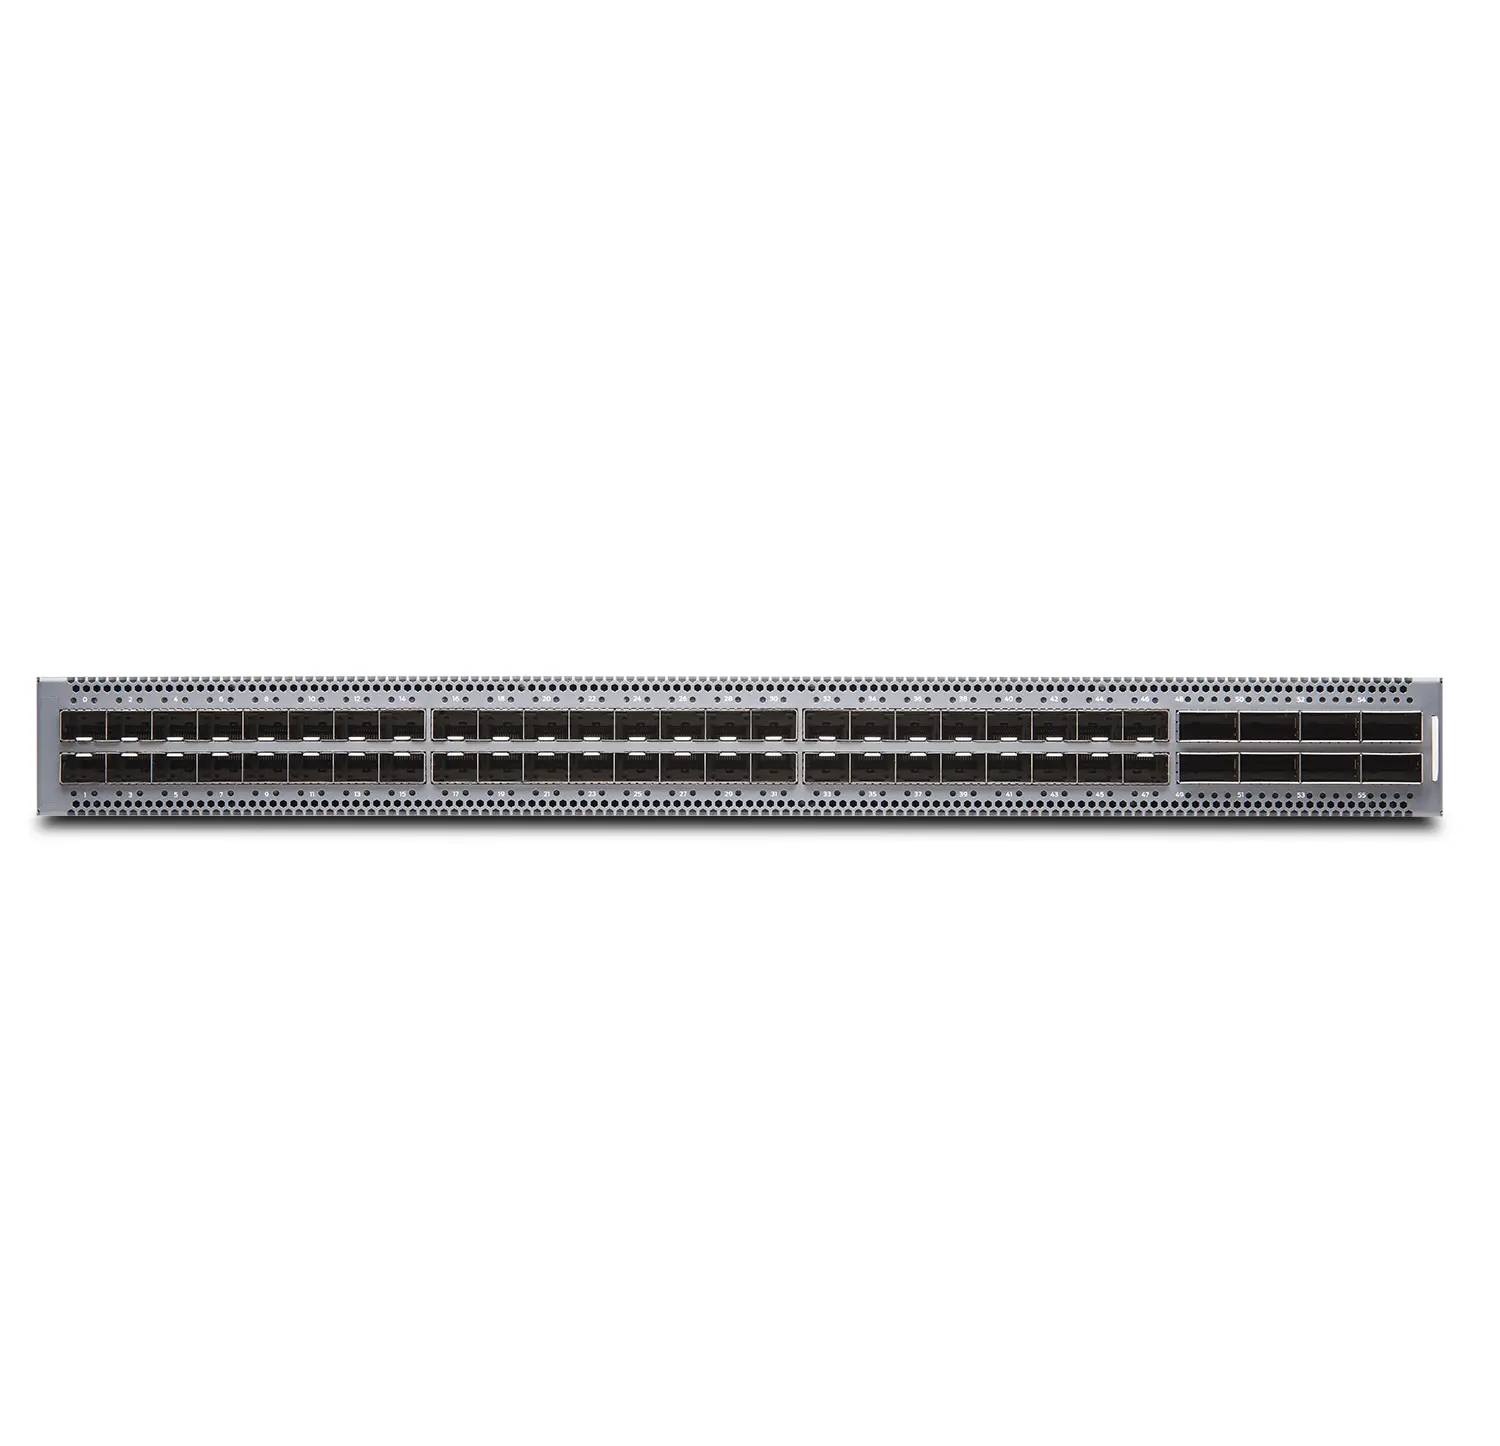 Ursprüngliche neue Juniper-Netzwerk-Switch-QFX5120-48Y-AFO2 mit 48*25GbE Downlink 8*100GbE Uplink-Ports Enterprise Ethernet-Switch